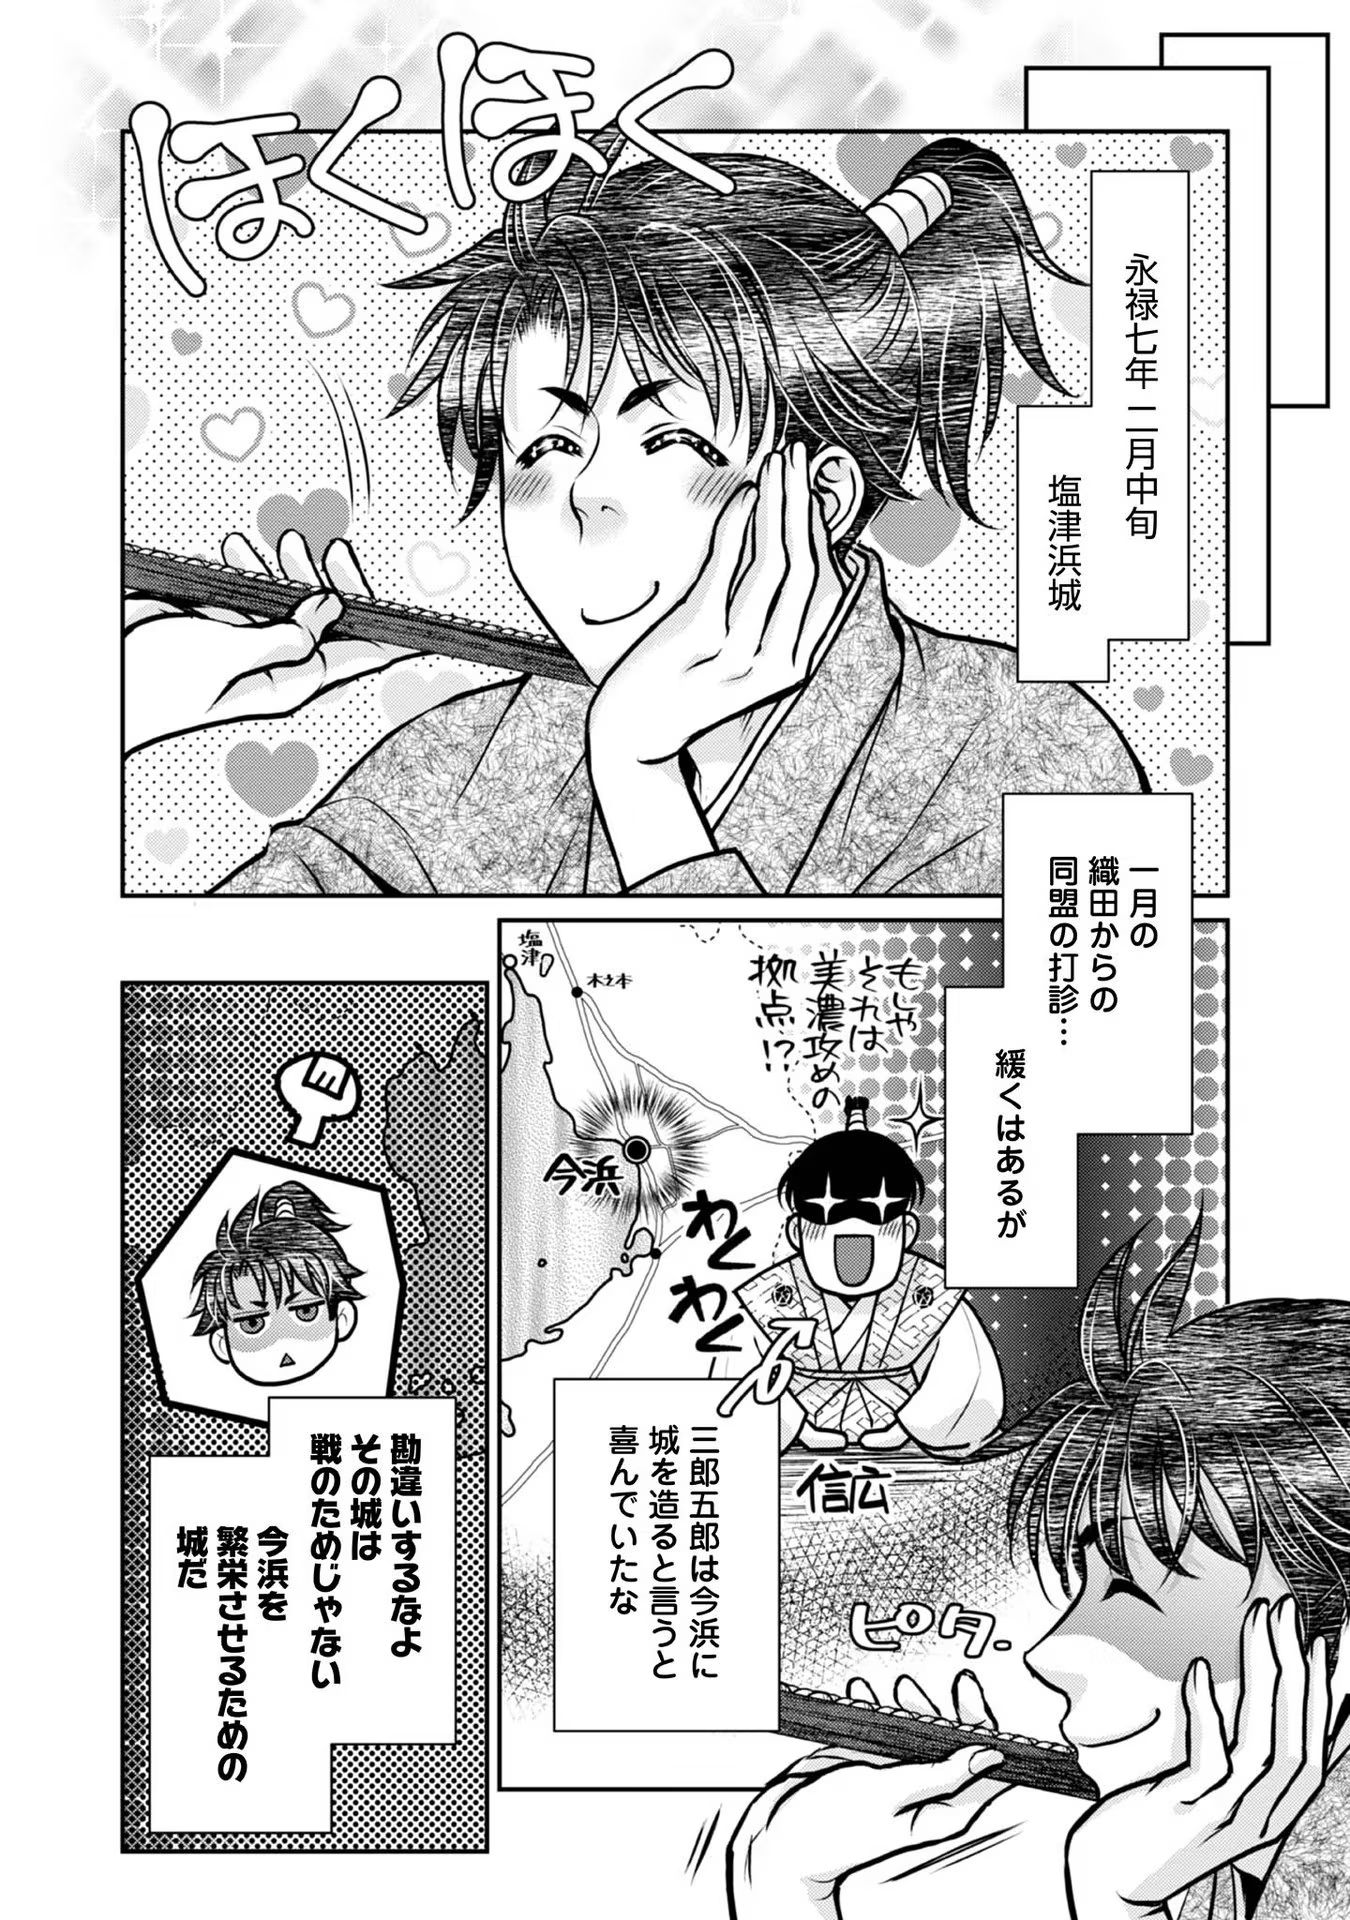 Afumi no Umi – Minamo ga Yureru Toki - Chapter 20 - Page 28